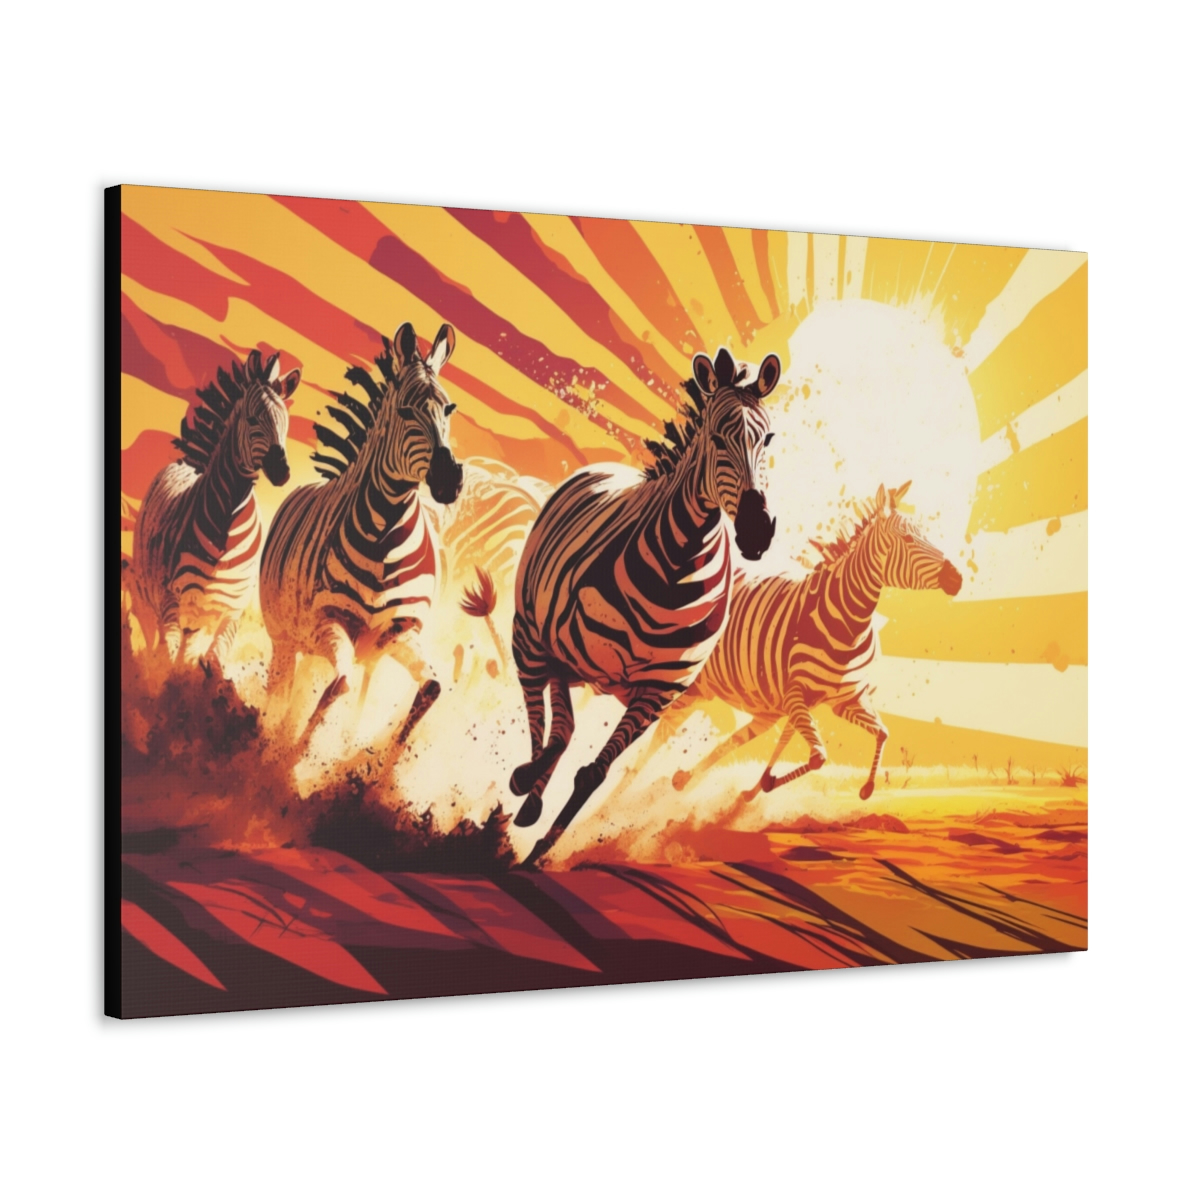 Trippy Art Canvas Print: Zebras of Freedom